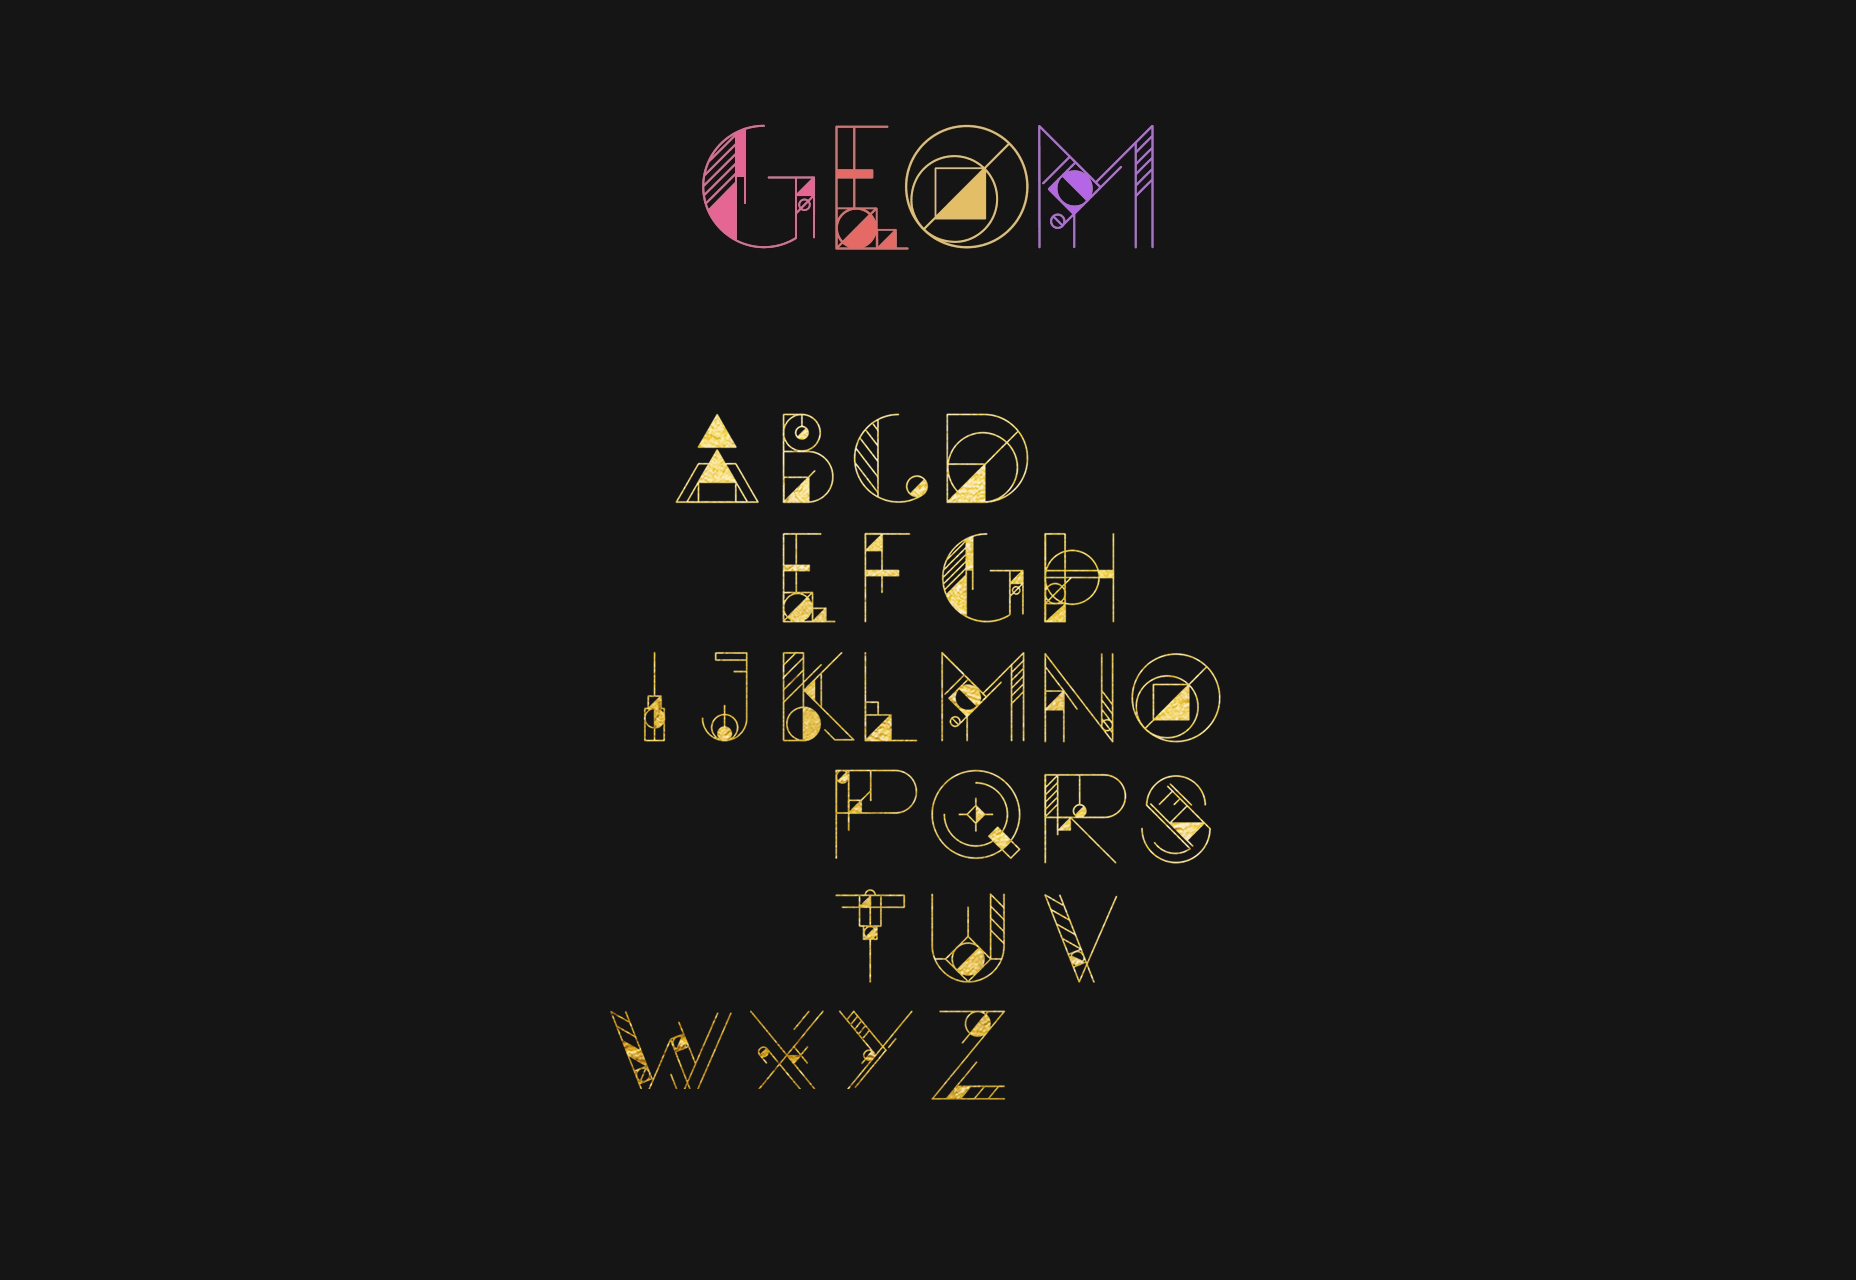 Zobrazení GEOM: plně geometricky ozdobený typ písma